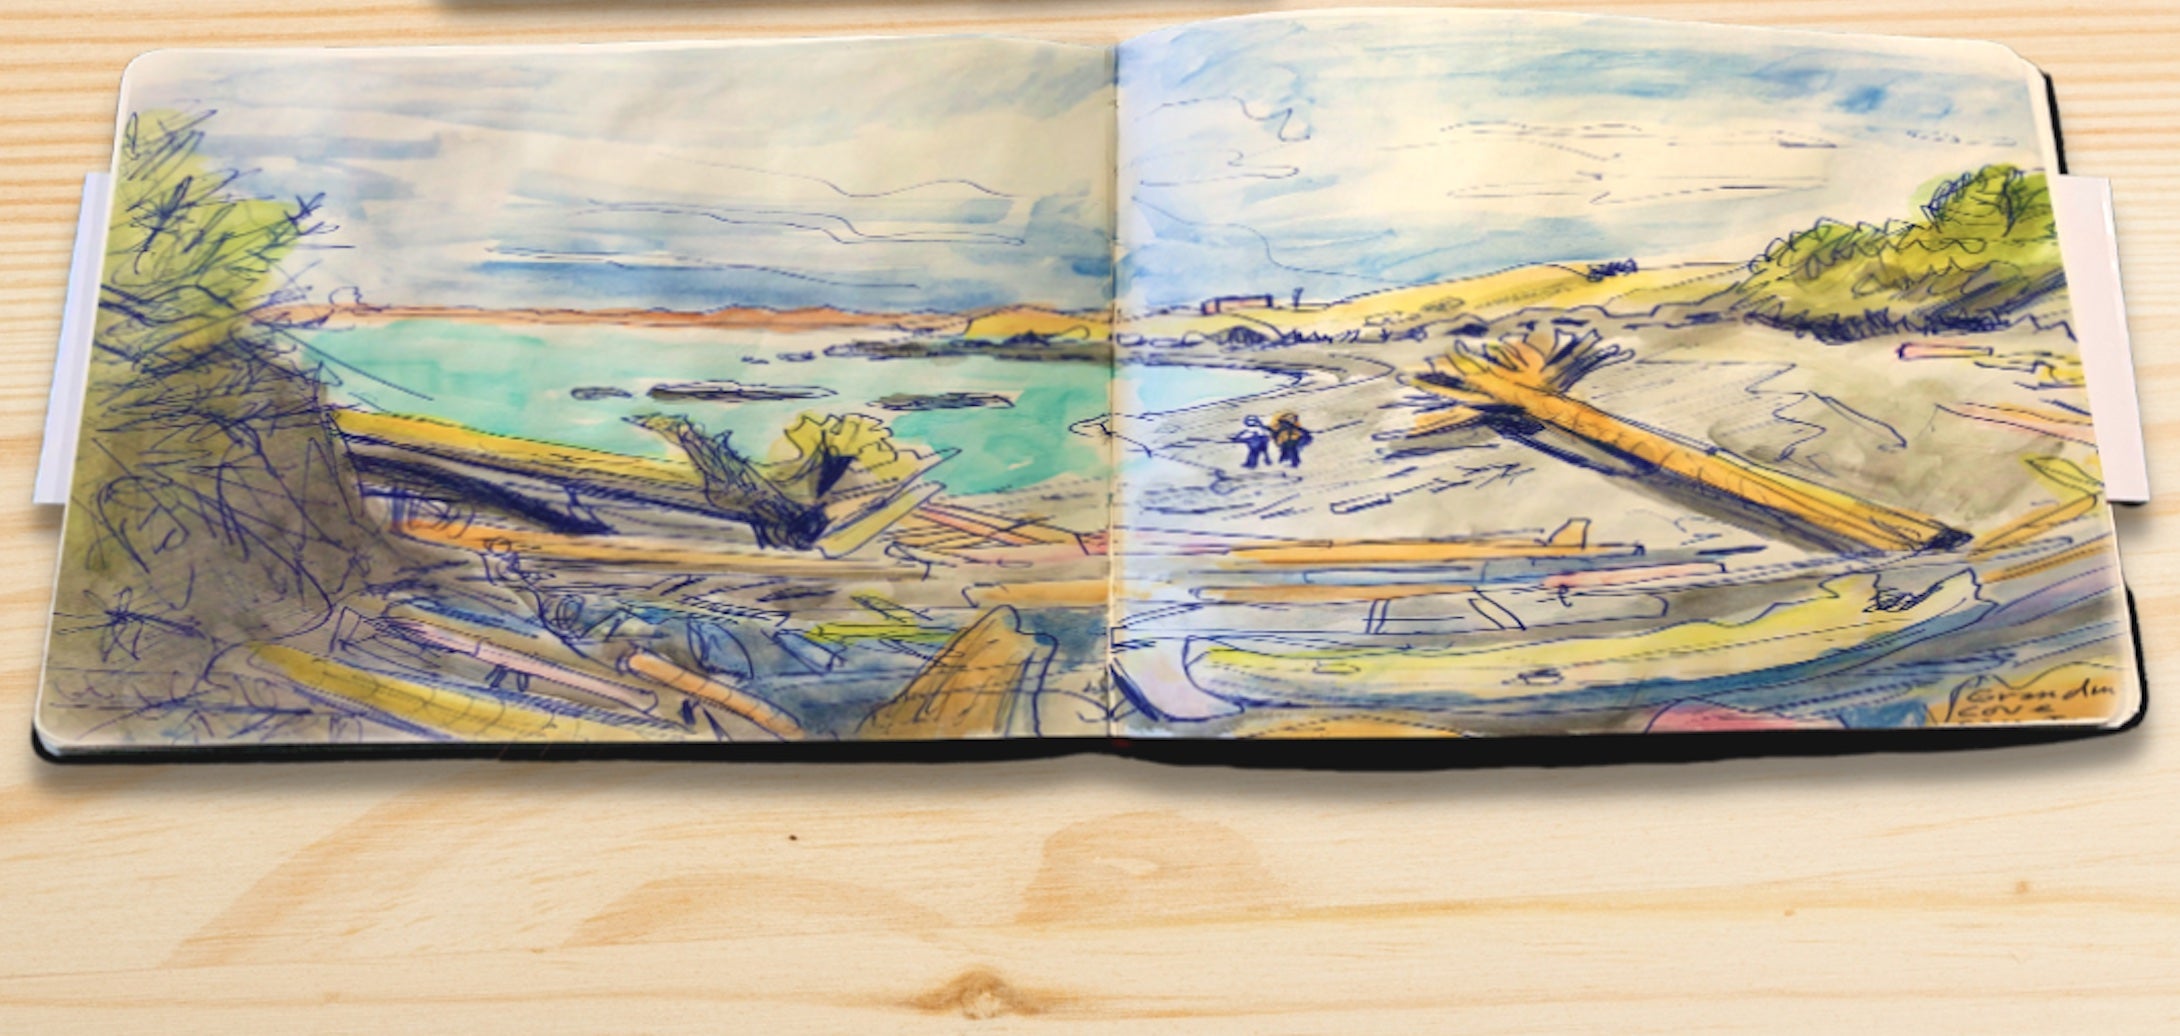 Landscape-Shaped Sketchbook, 8.25 x 11.25 inches, Ideal for Ink, Water Color, Pen, Pencils. Landscape Large